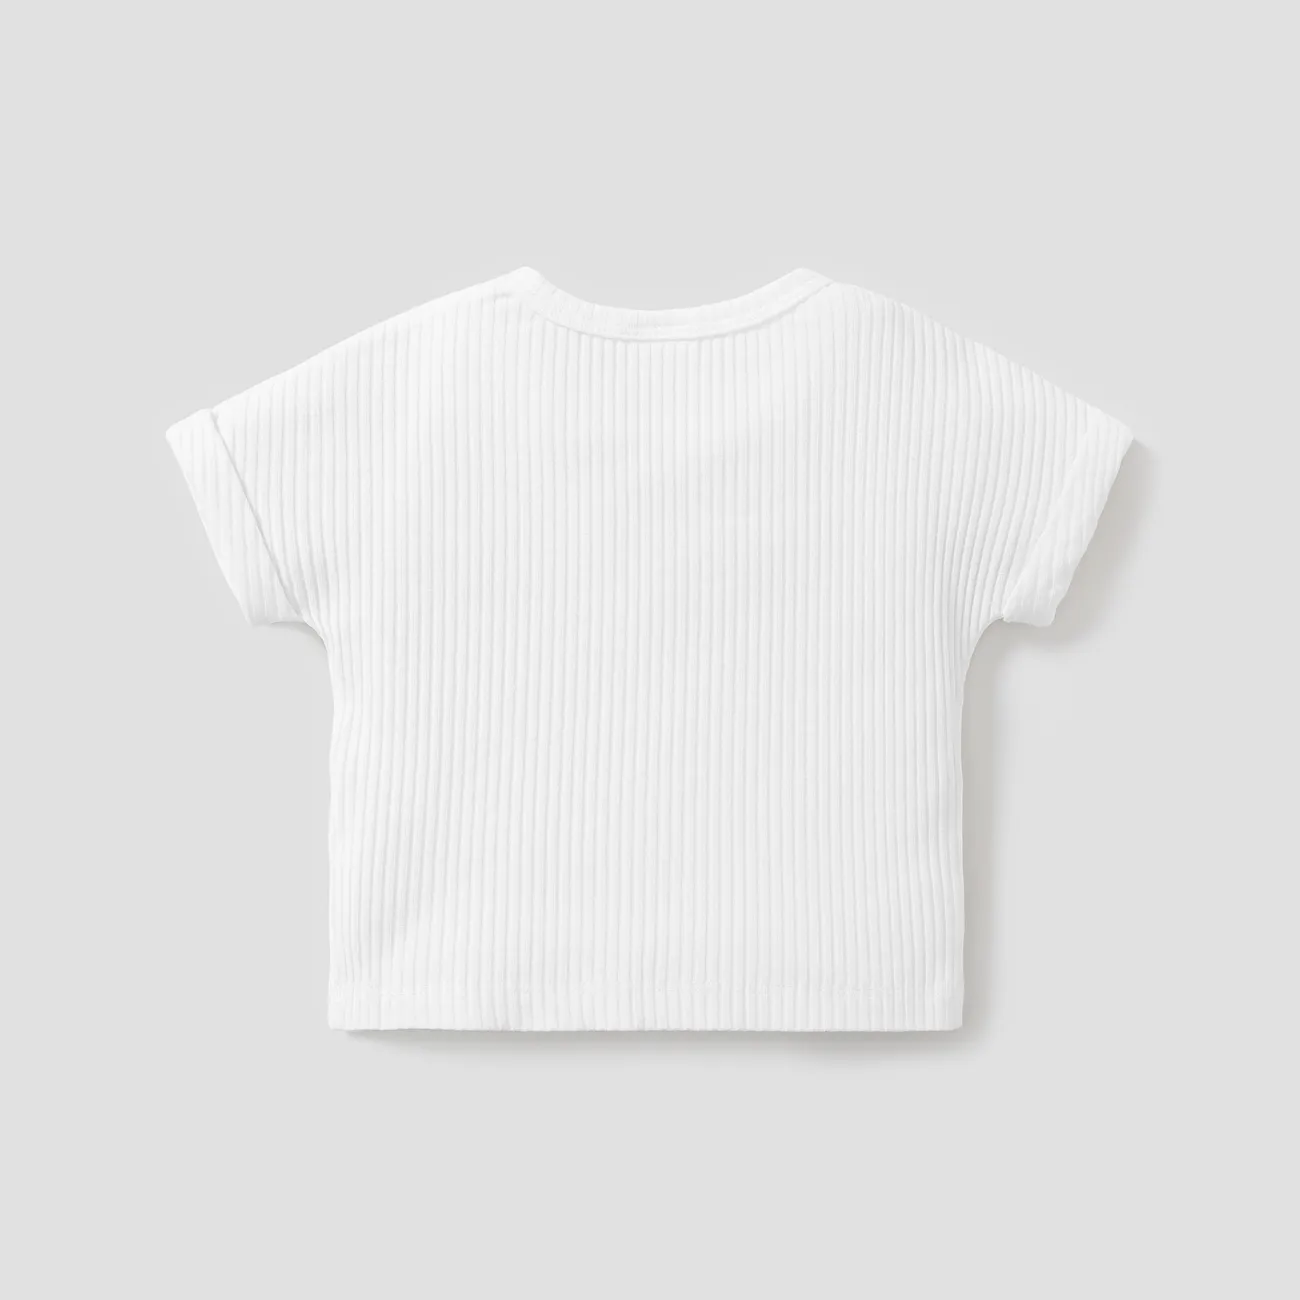 Kleinkinder Unisex Lässig Kurzärmelig T-Shirts weiß big image 1